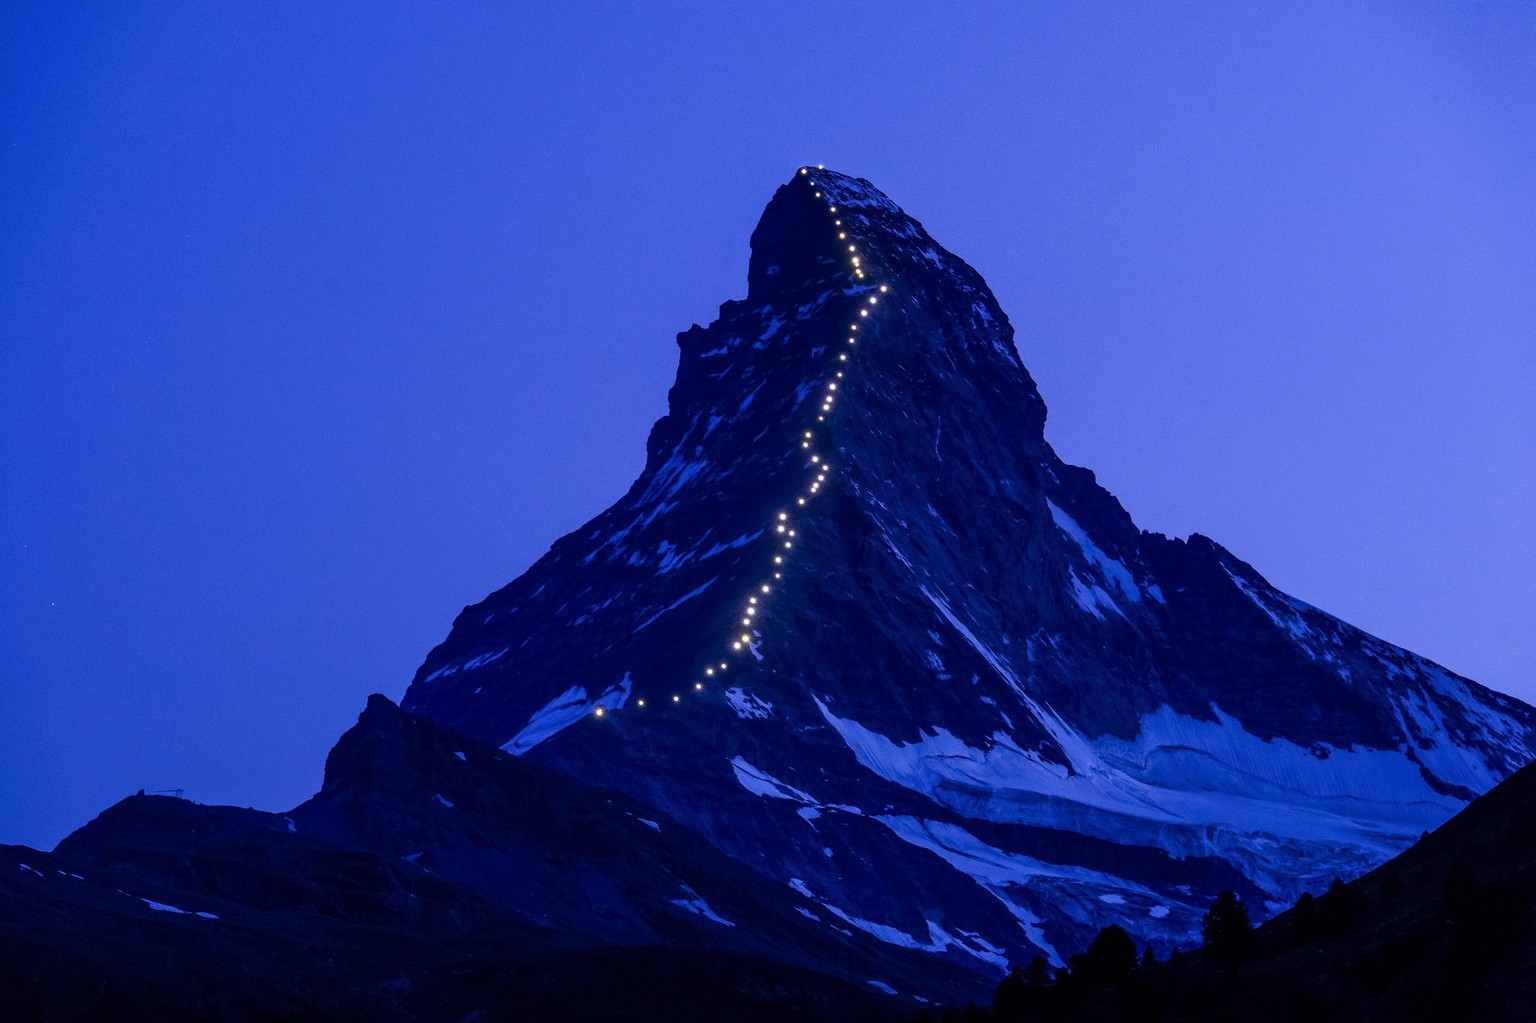 Die Lichterkette am Matterhorn besteht aus 50 Lampen.